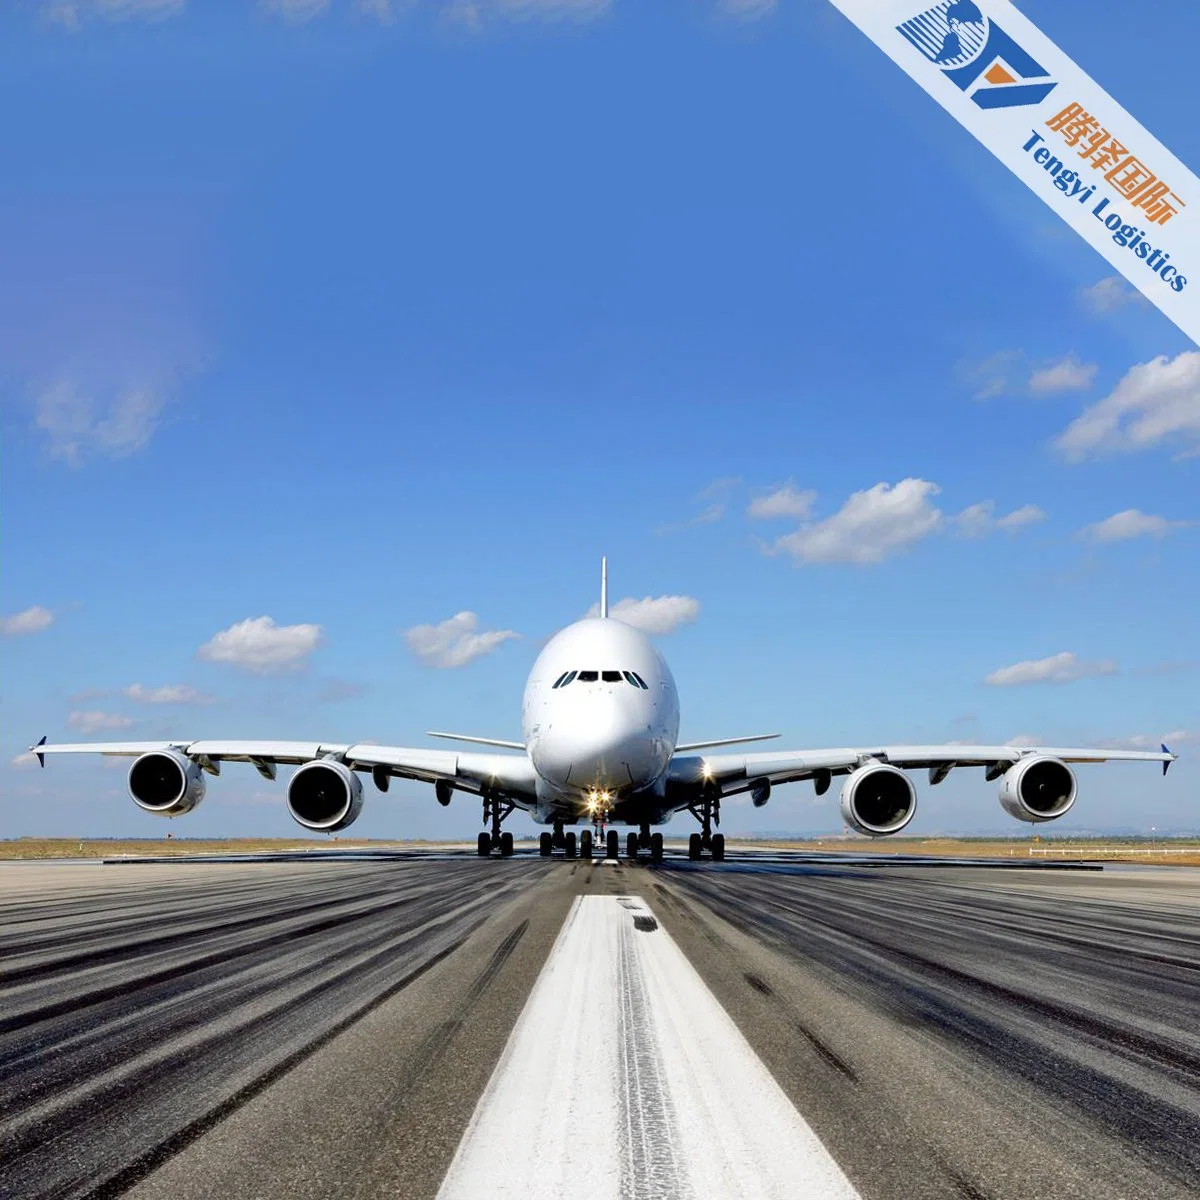 شحن خدمة الشحن الجوي أرامكس Forwarder Transportation Shipment إلى سريلانكا تكلفة منخفضة